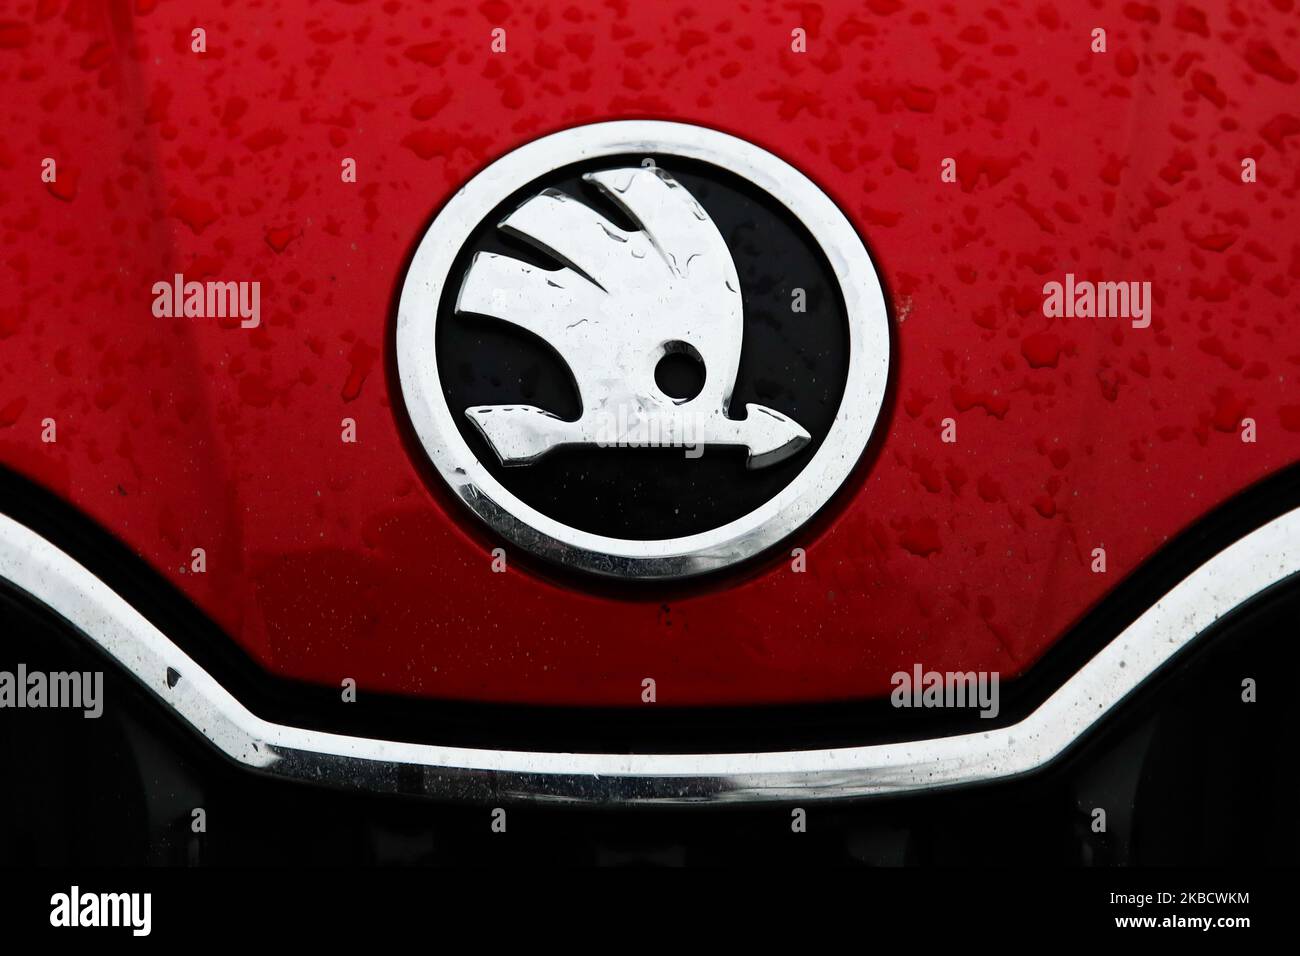 https://c8.alamy.com/comp/2KBCWKM/skoda-logo-is-seen-on-the-car-krakow-poland-on-november-21-2019-photo-by-jakub-porzyckinurphoto-2KBCWKM.jpg